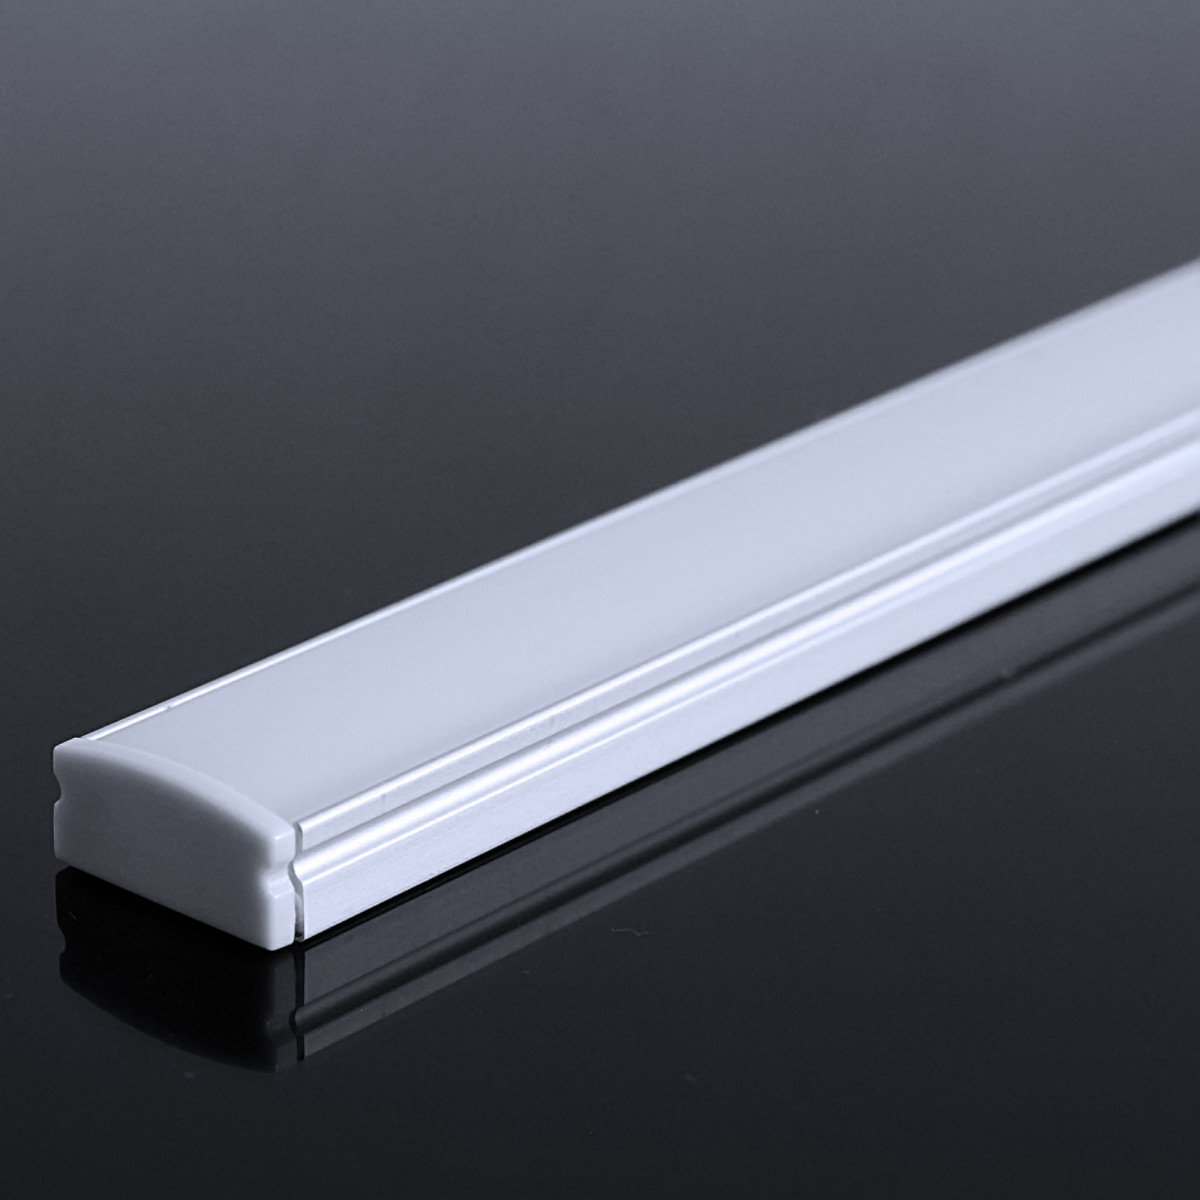 LED Flachprofil "Slim-Line" | Abdeckung diffus | Zuschnitt auf 21cm |